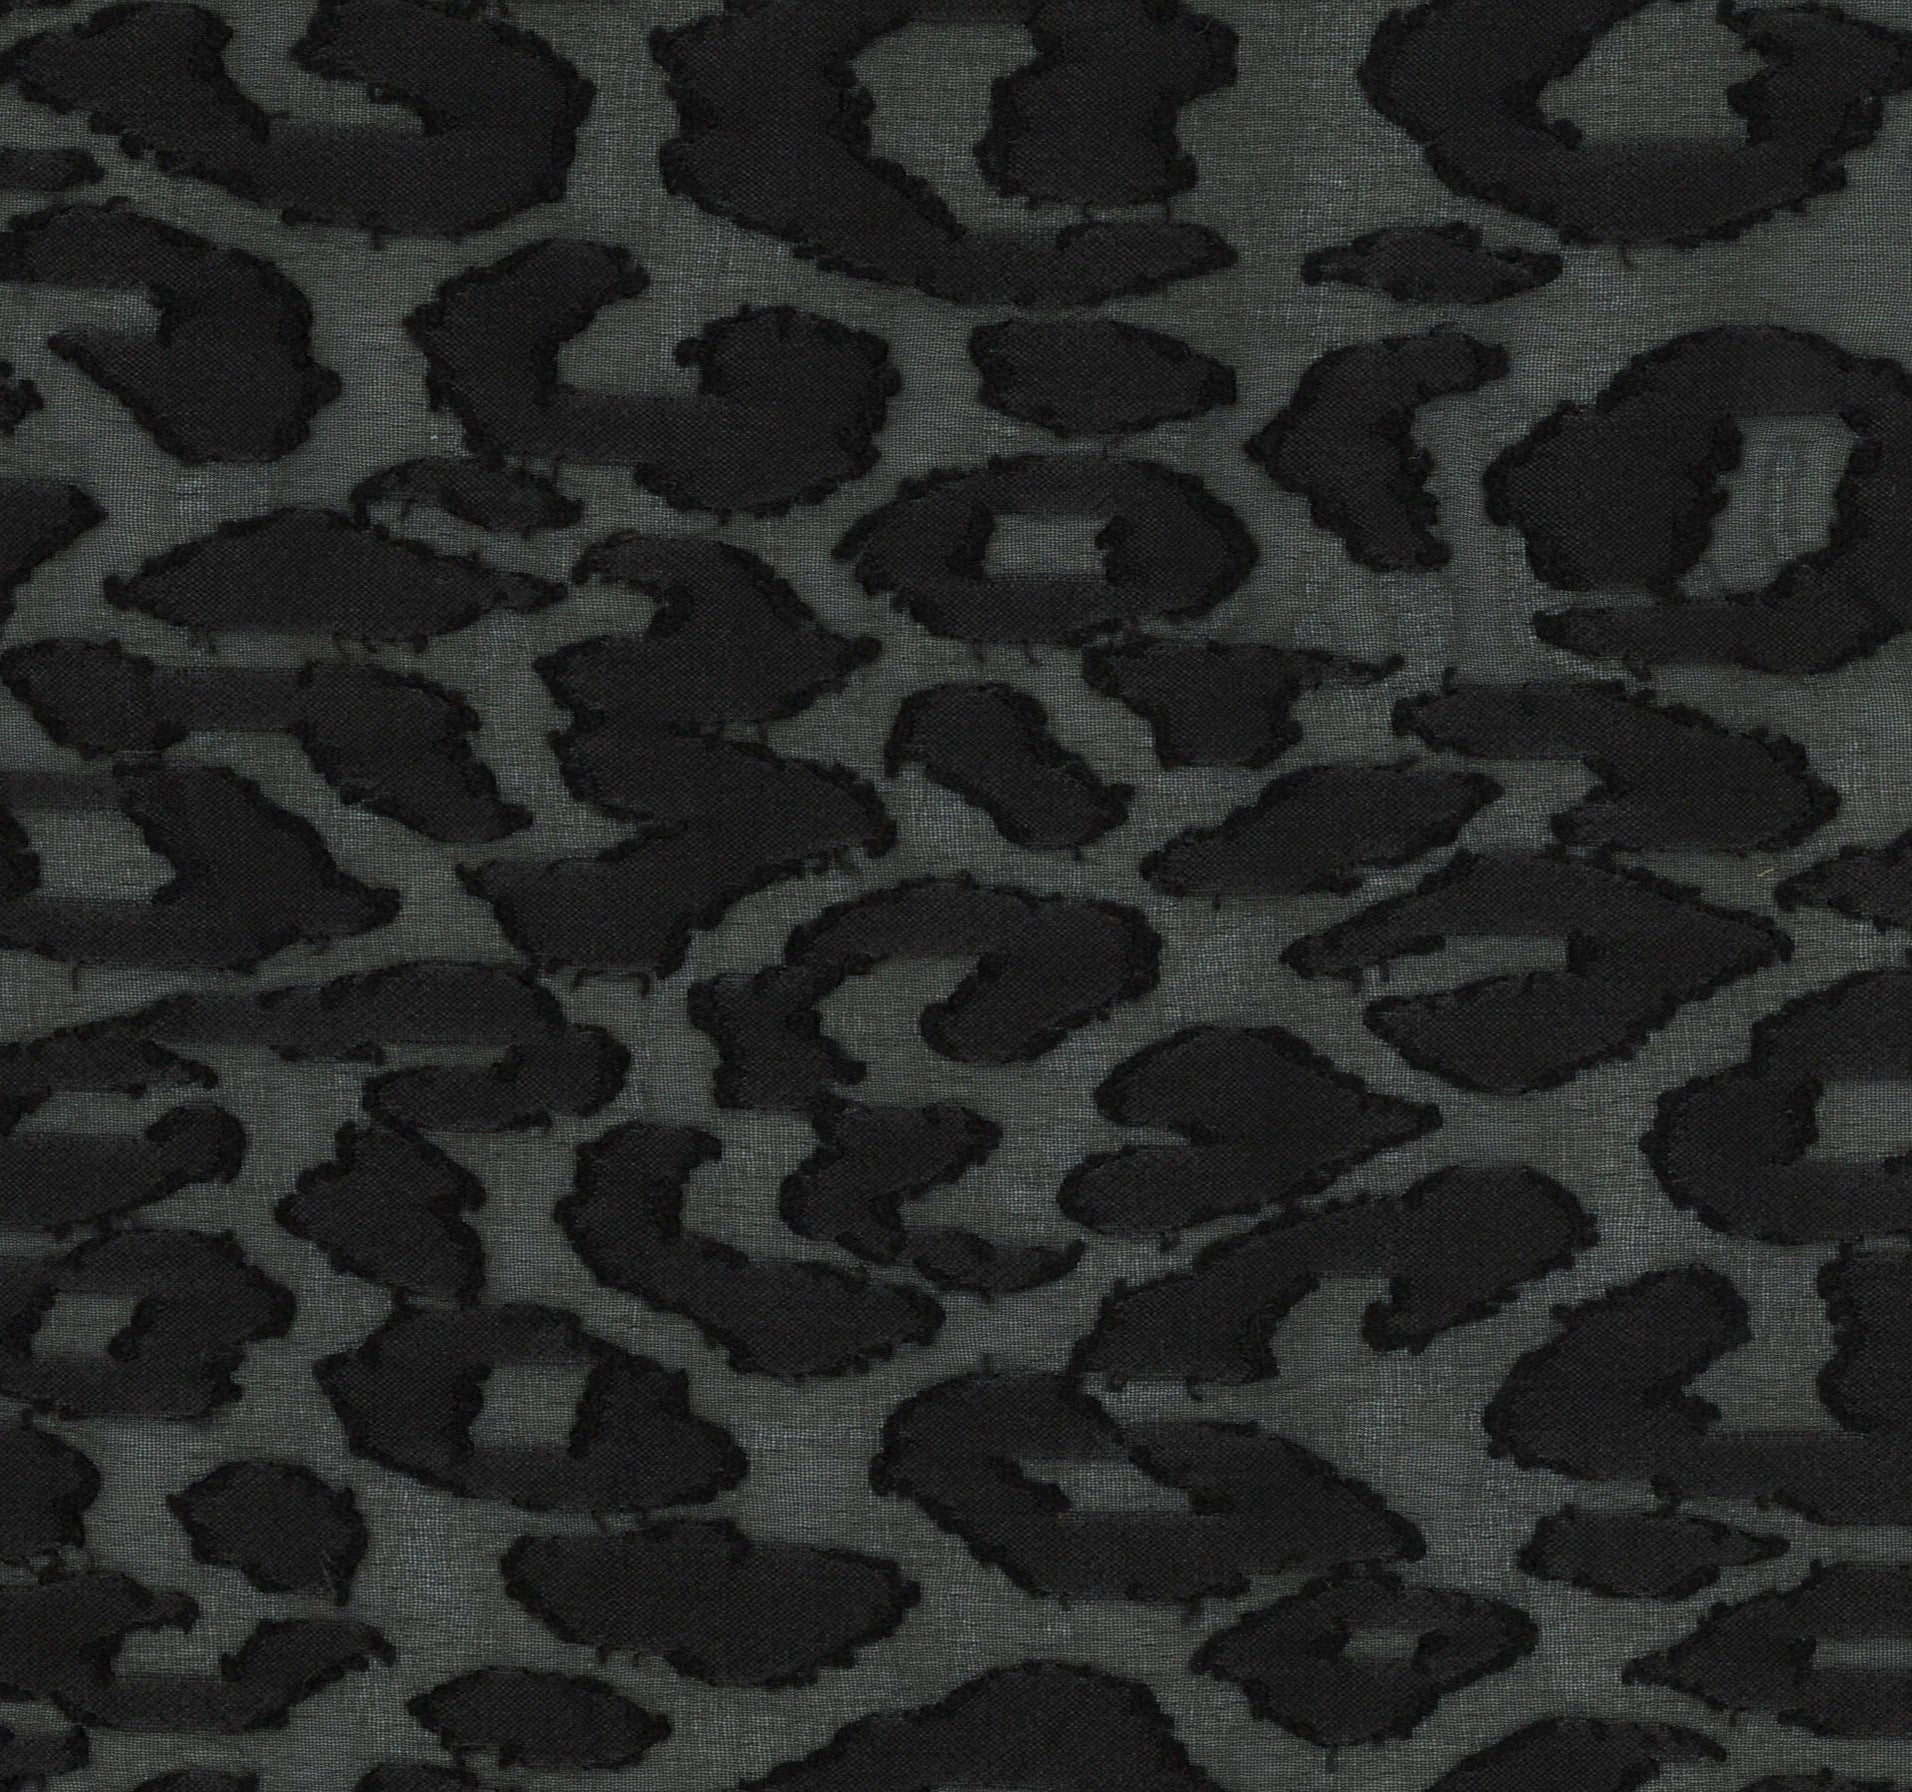 32001-04 Black Chiffon Polyester Spots Jacquard Burn Out Plain Dyed 100% black burn out jacquard polyester woven Chiffon, Jacquard, Burn-Out - knit fabric - woven fabric - fabric company - fabric wholesale - fabric b2b - fabric factory - high quality fabric - hong kong fabric - fabric hk - acetate fabric - cotton fabric - linen fabric - metallic fabric - nylon fabric - polyester fabric - spandex fabric - chun wing hing - cwh hk - fabric worldwide ship - 針織布 - 梳織布 - 布料公司- 布料批發 - 香港布料 - 秦榮興